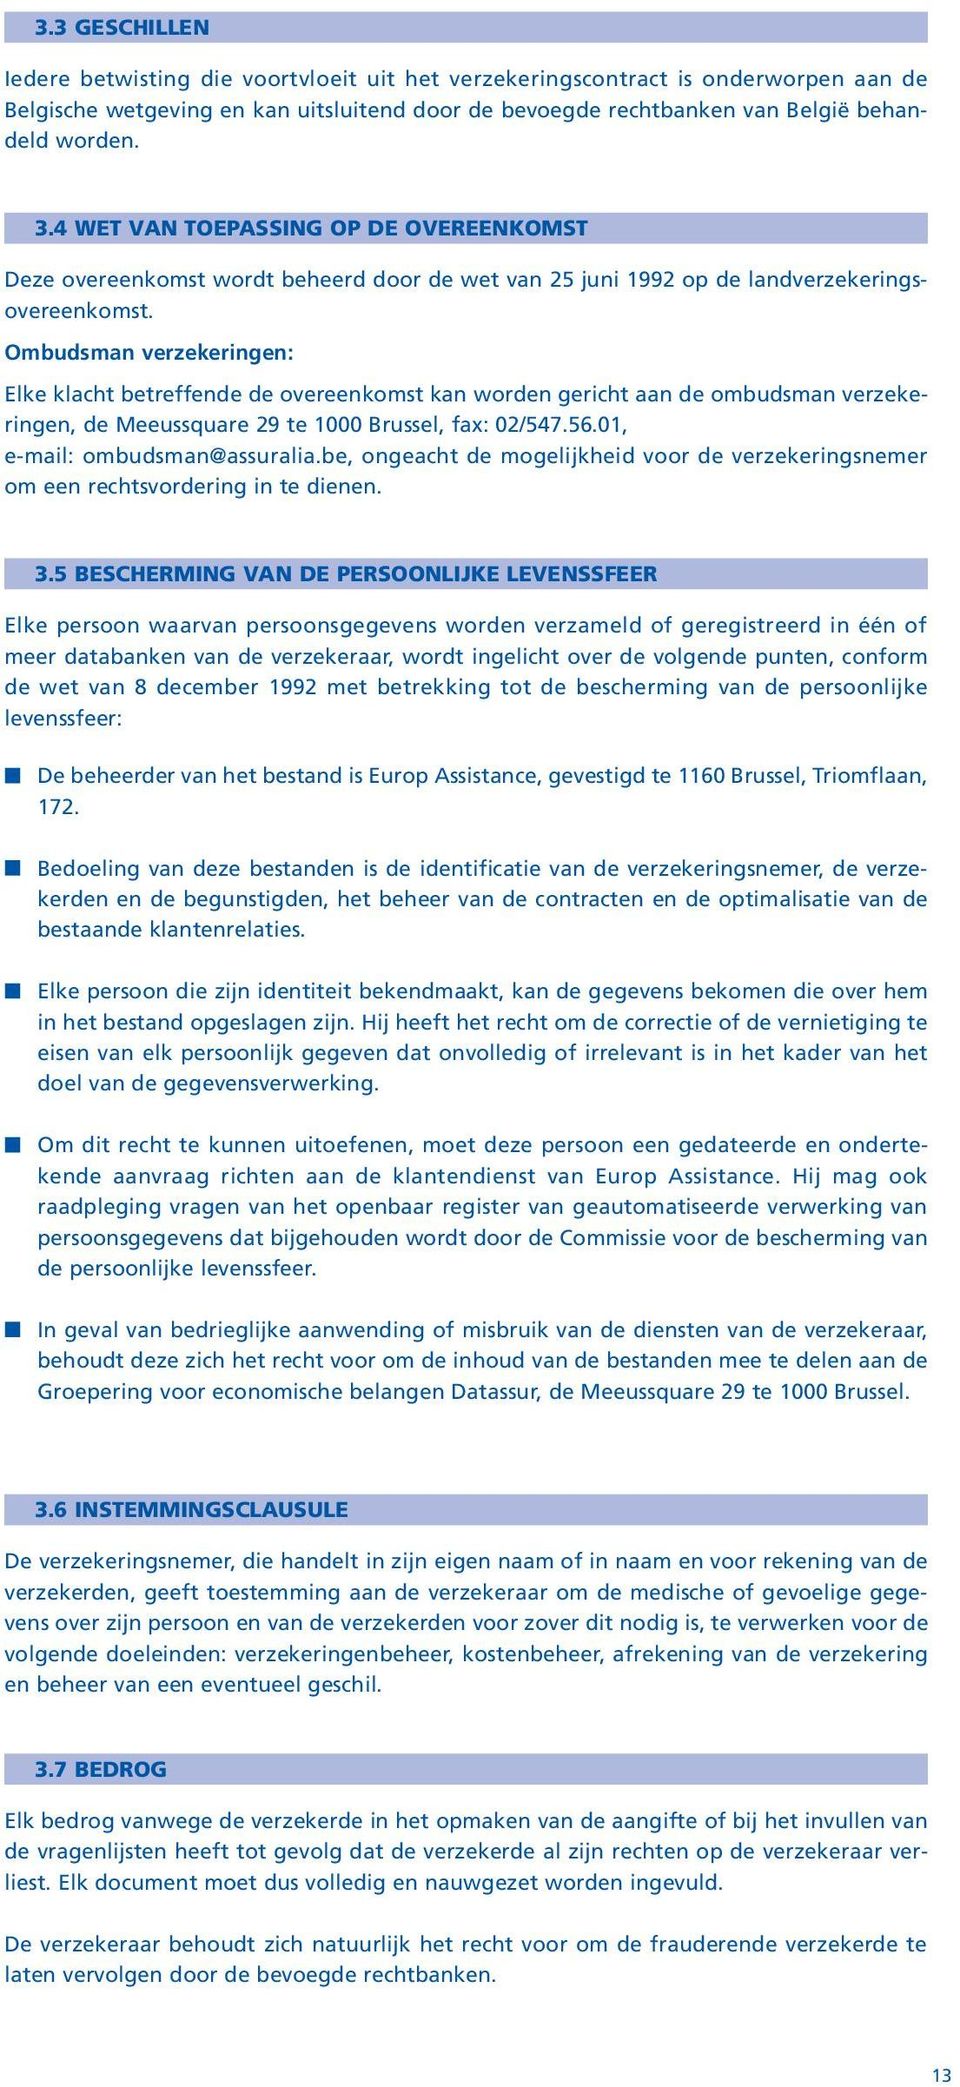 Ombudsman verzekeringen: Elke klacht betreffende de overeenkomst kan worden gericht aan de ombudsman verzekeringen, de Meeussquare 29 te 1000 Brussel, fax: 02/547.56.01, e-mail: ombudsman@assuralia.